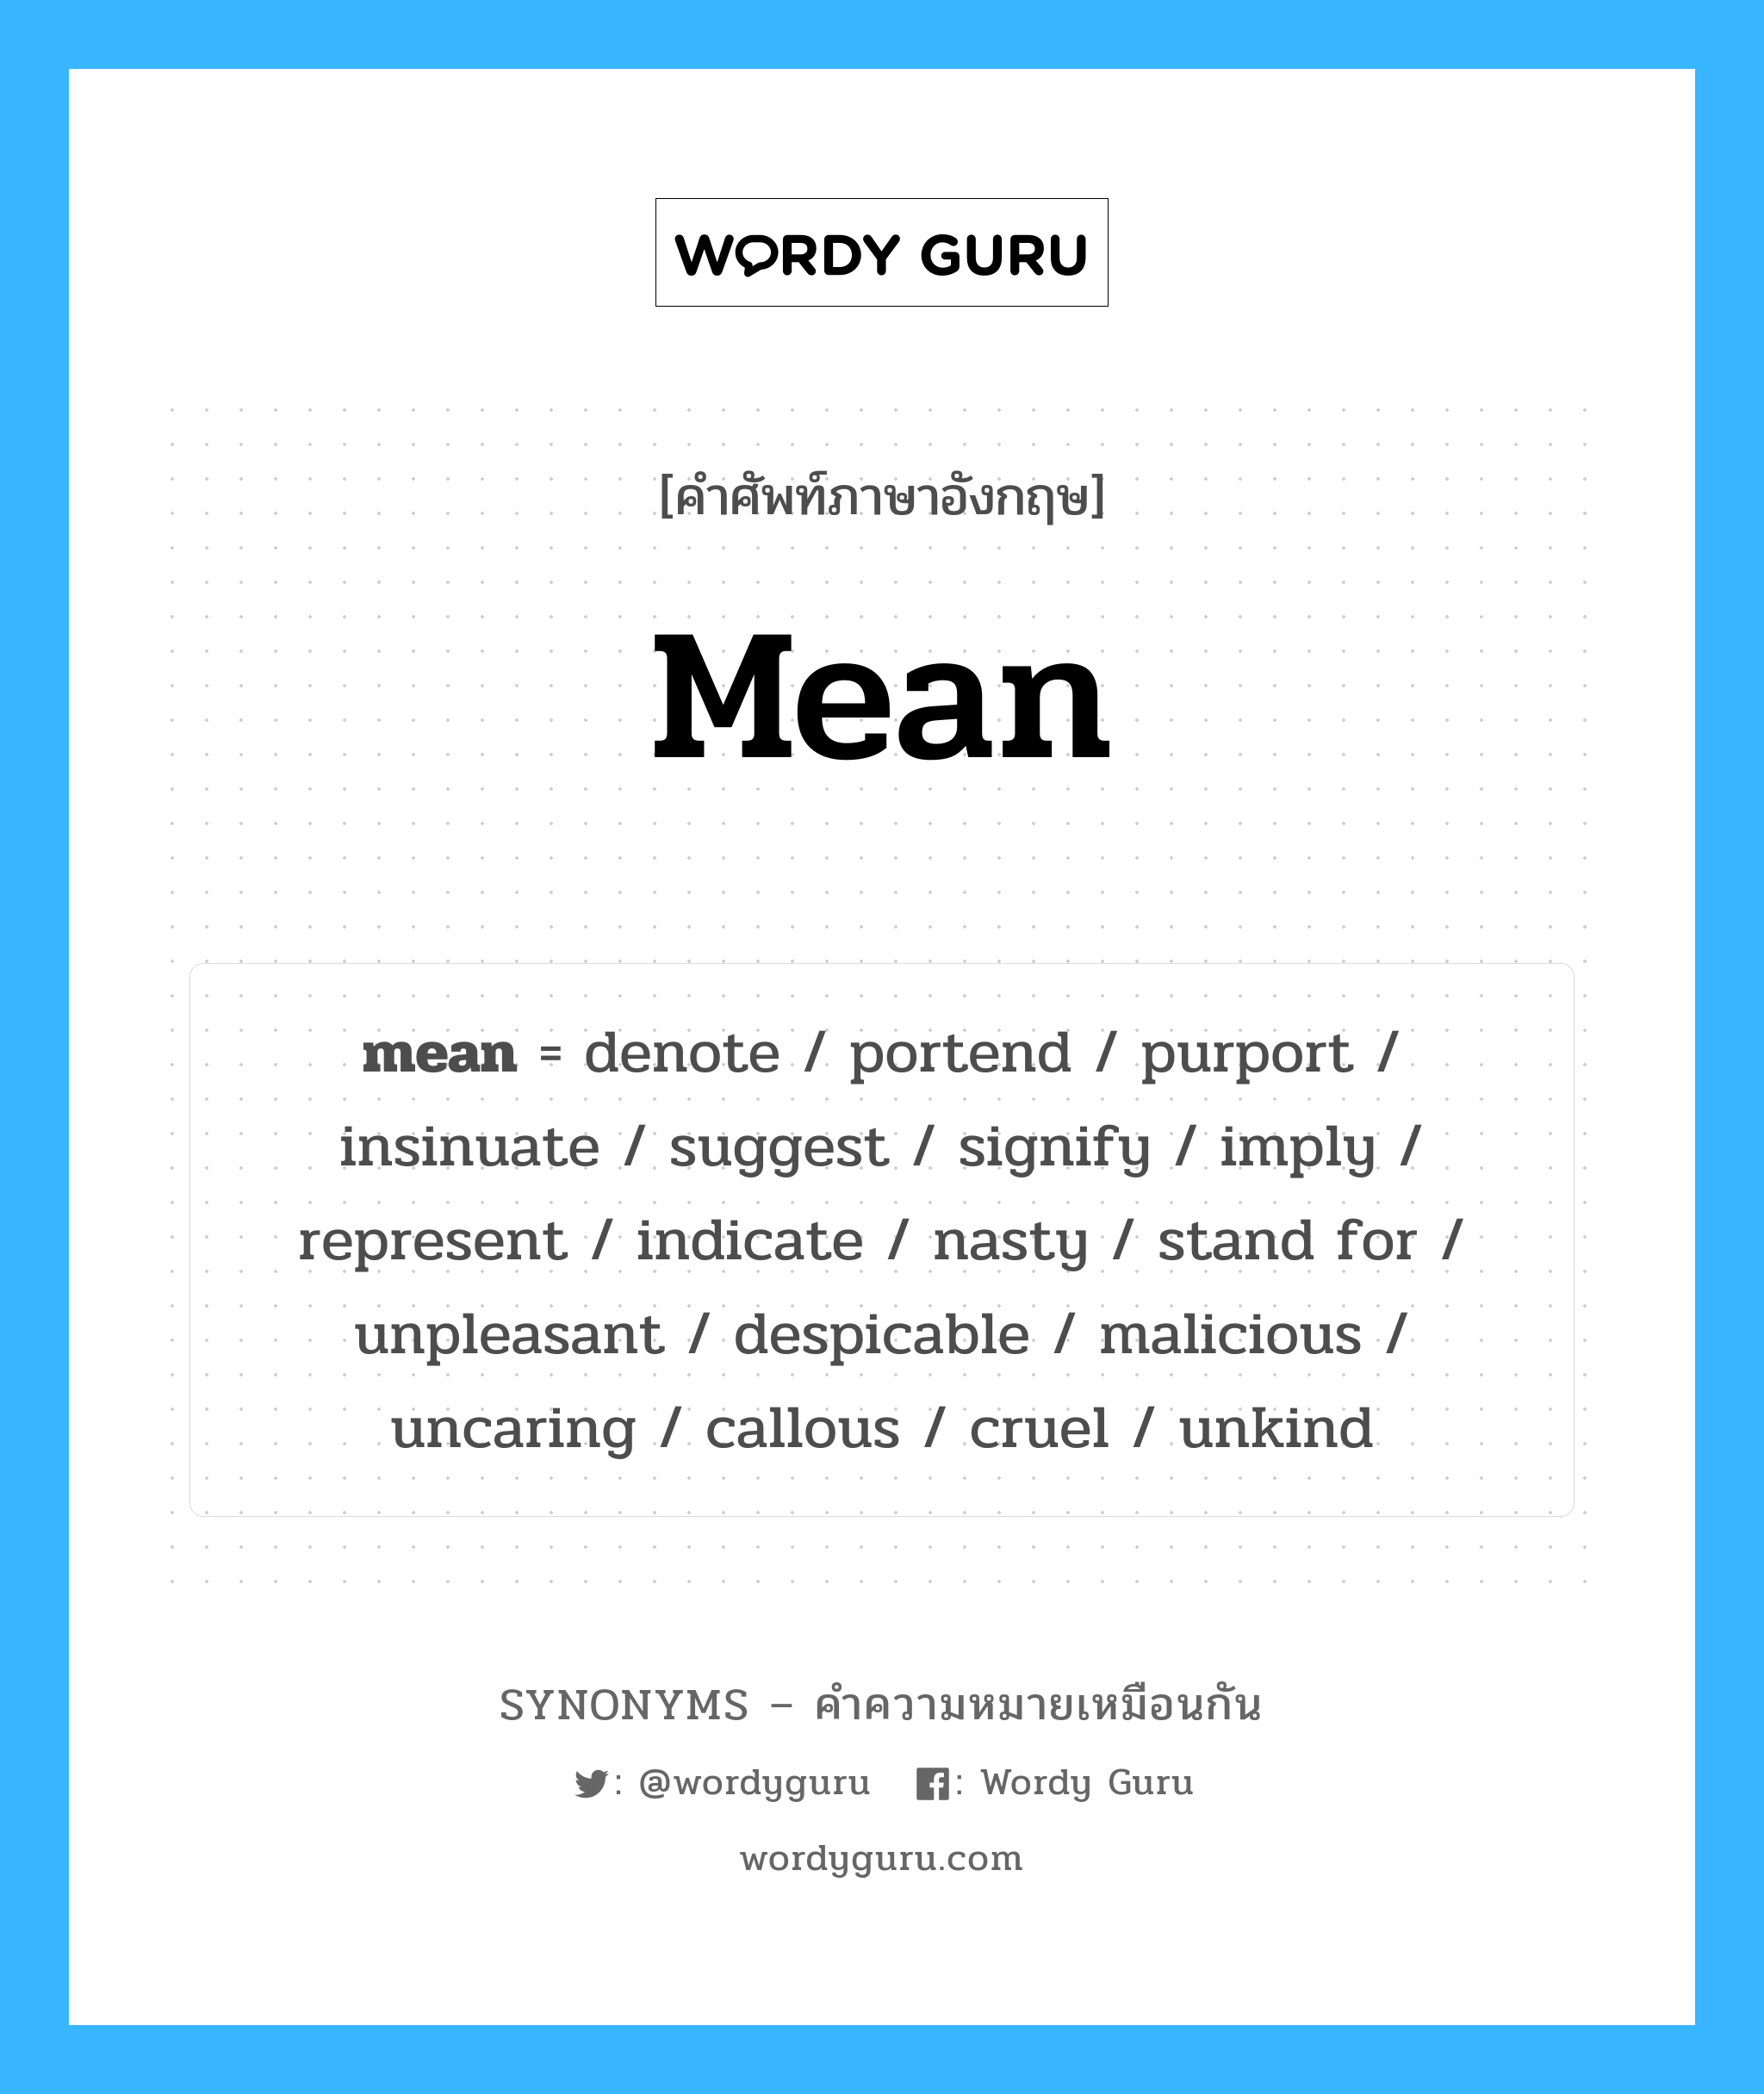 unpleasant เป็นหนึ่งใน mean และมีคำอื่น ๆ อีกดังนี้, คำศัพท์ภาษาอังกฤษ unpleasant ความหมายคล้ายกันกับ mean แปลว่า ไม่พึงประสงค์ หมวด mean